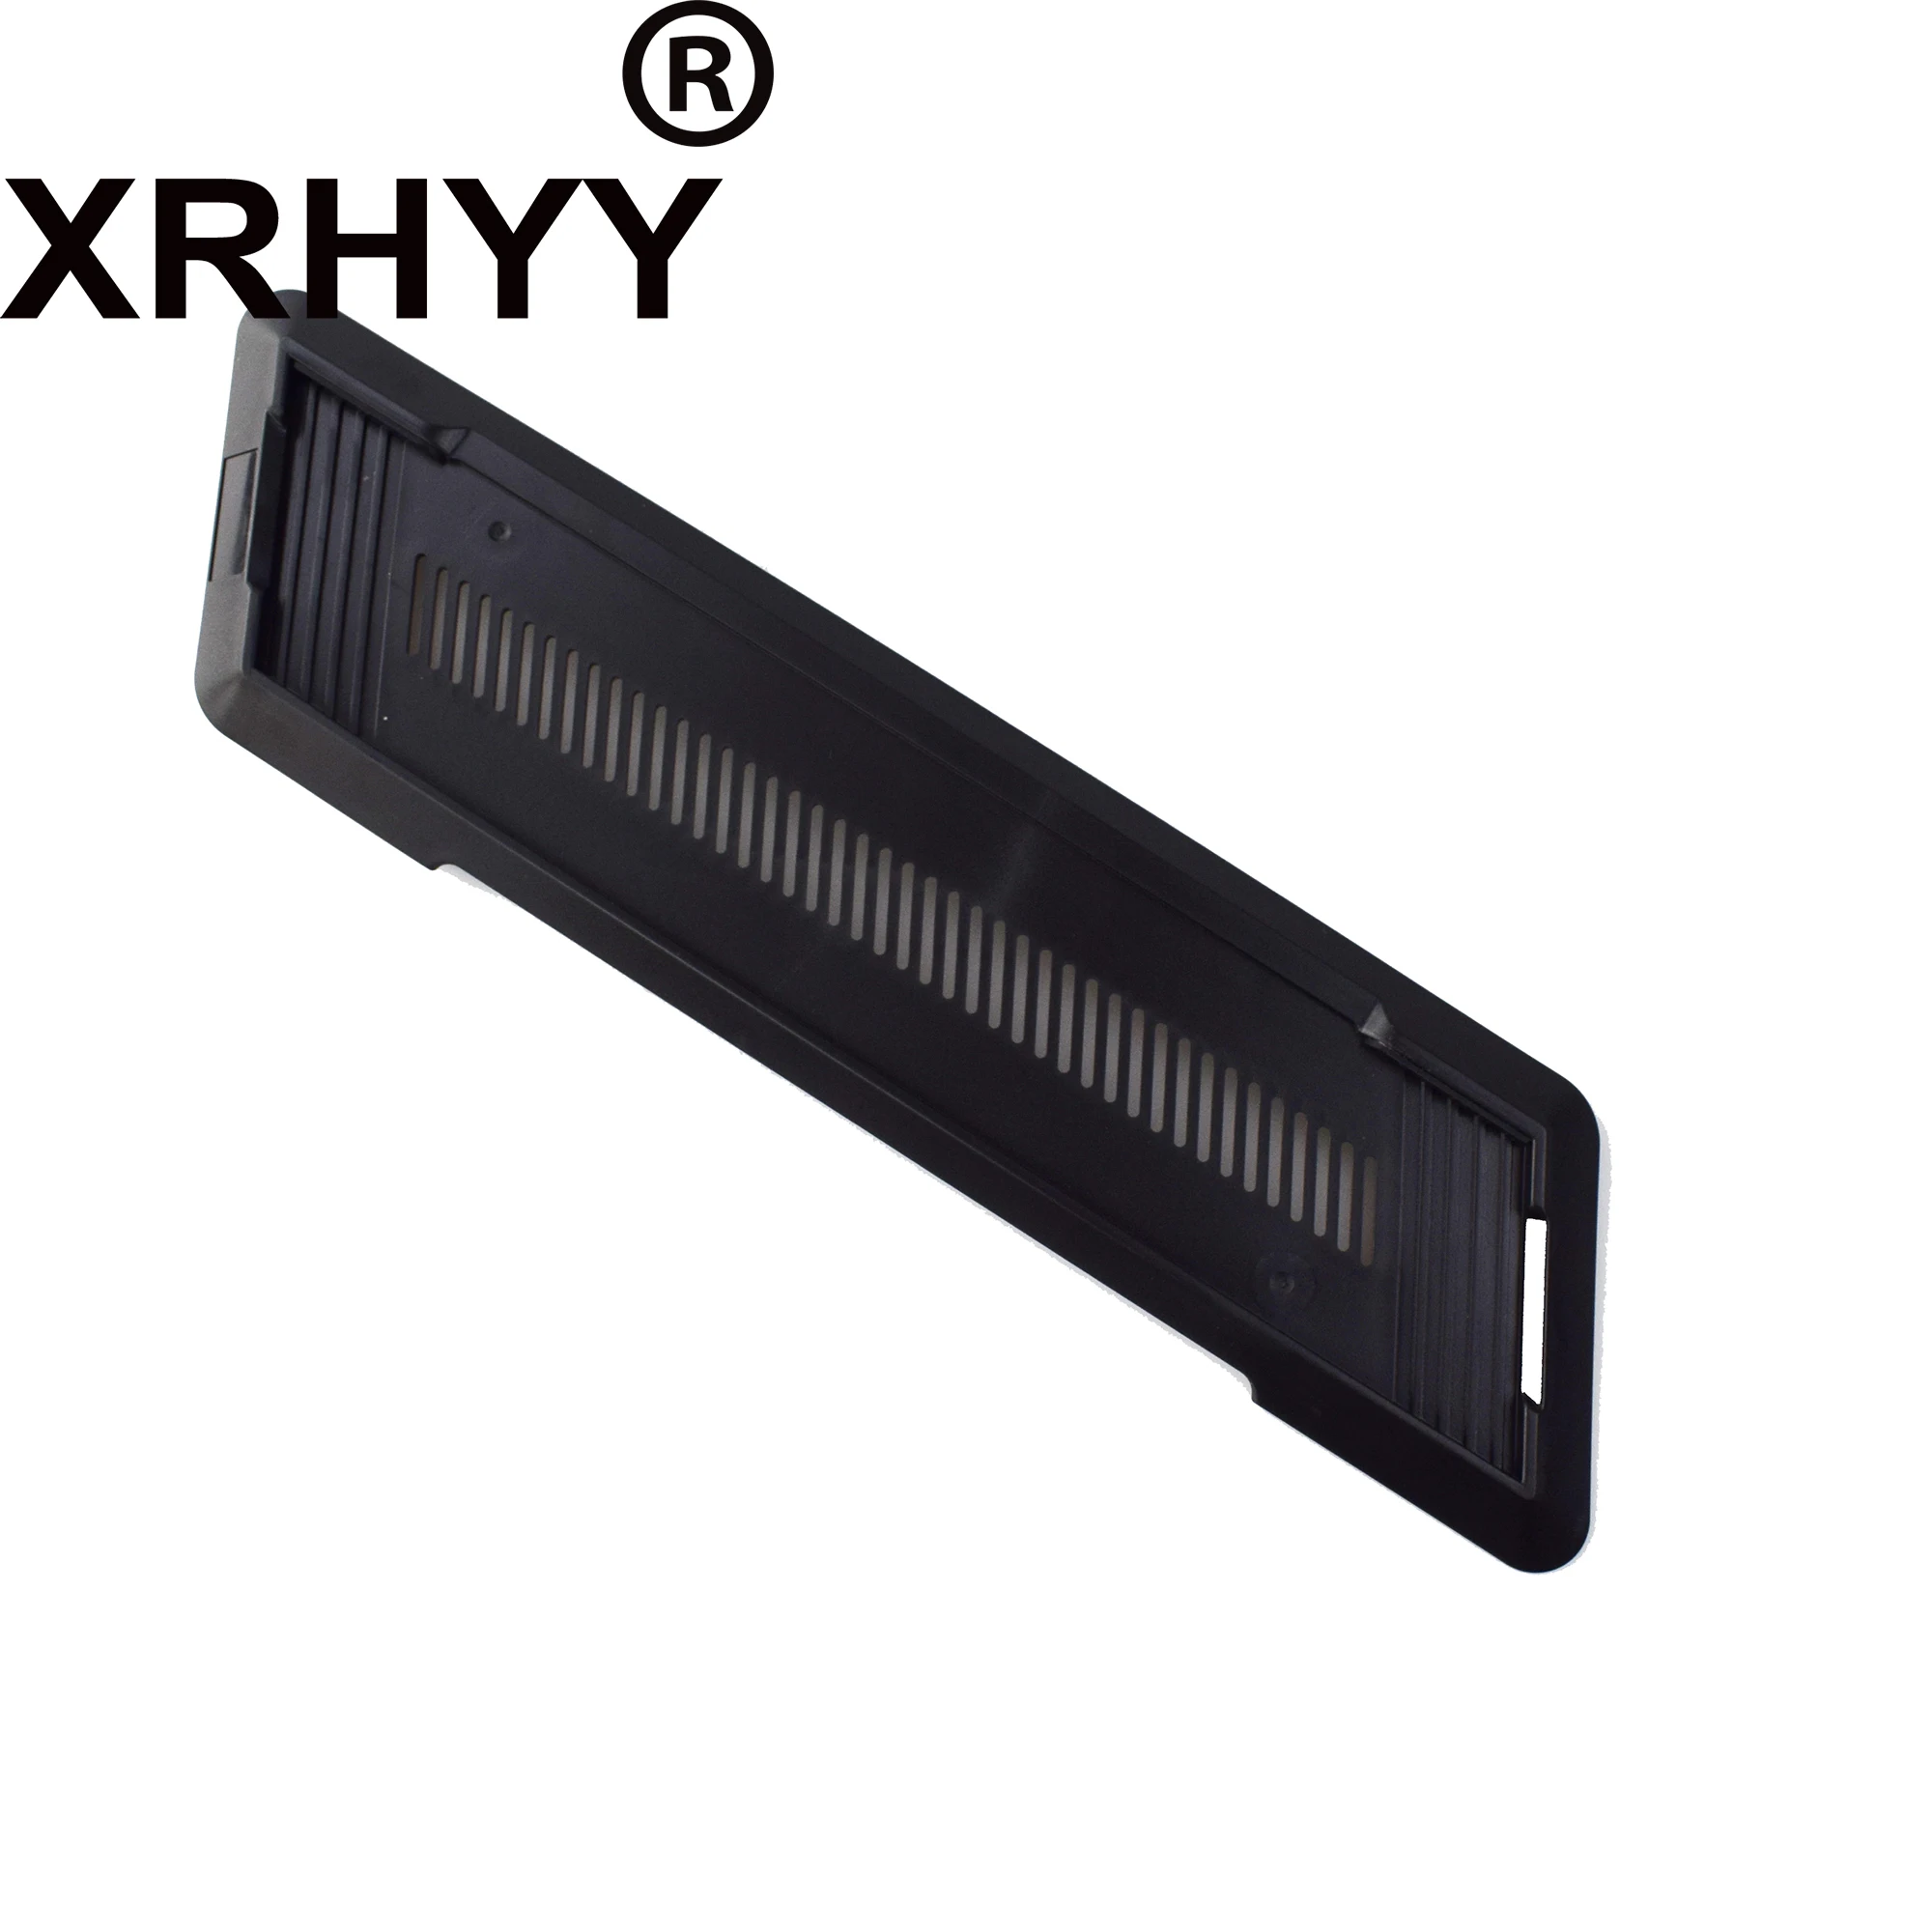 XRHYY Verticale del Basamento Del supporto Per Playstation PS4 Console Del Basamento Nero, Non Per PS4 Sottile/Pro